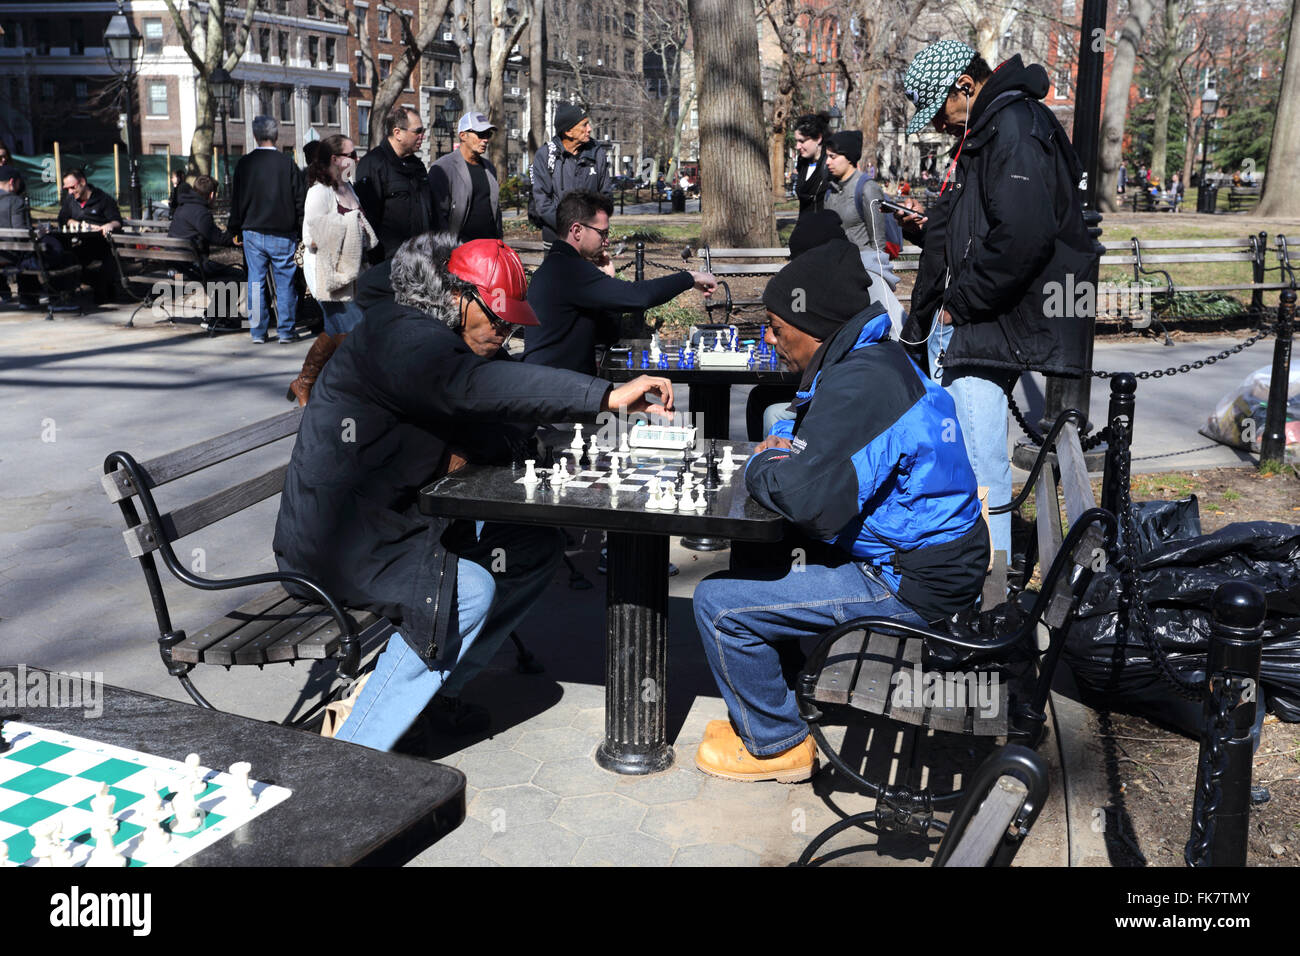 Jeu d'échecs du Parc Washington Square New York City Banque D'Images